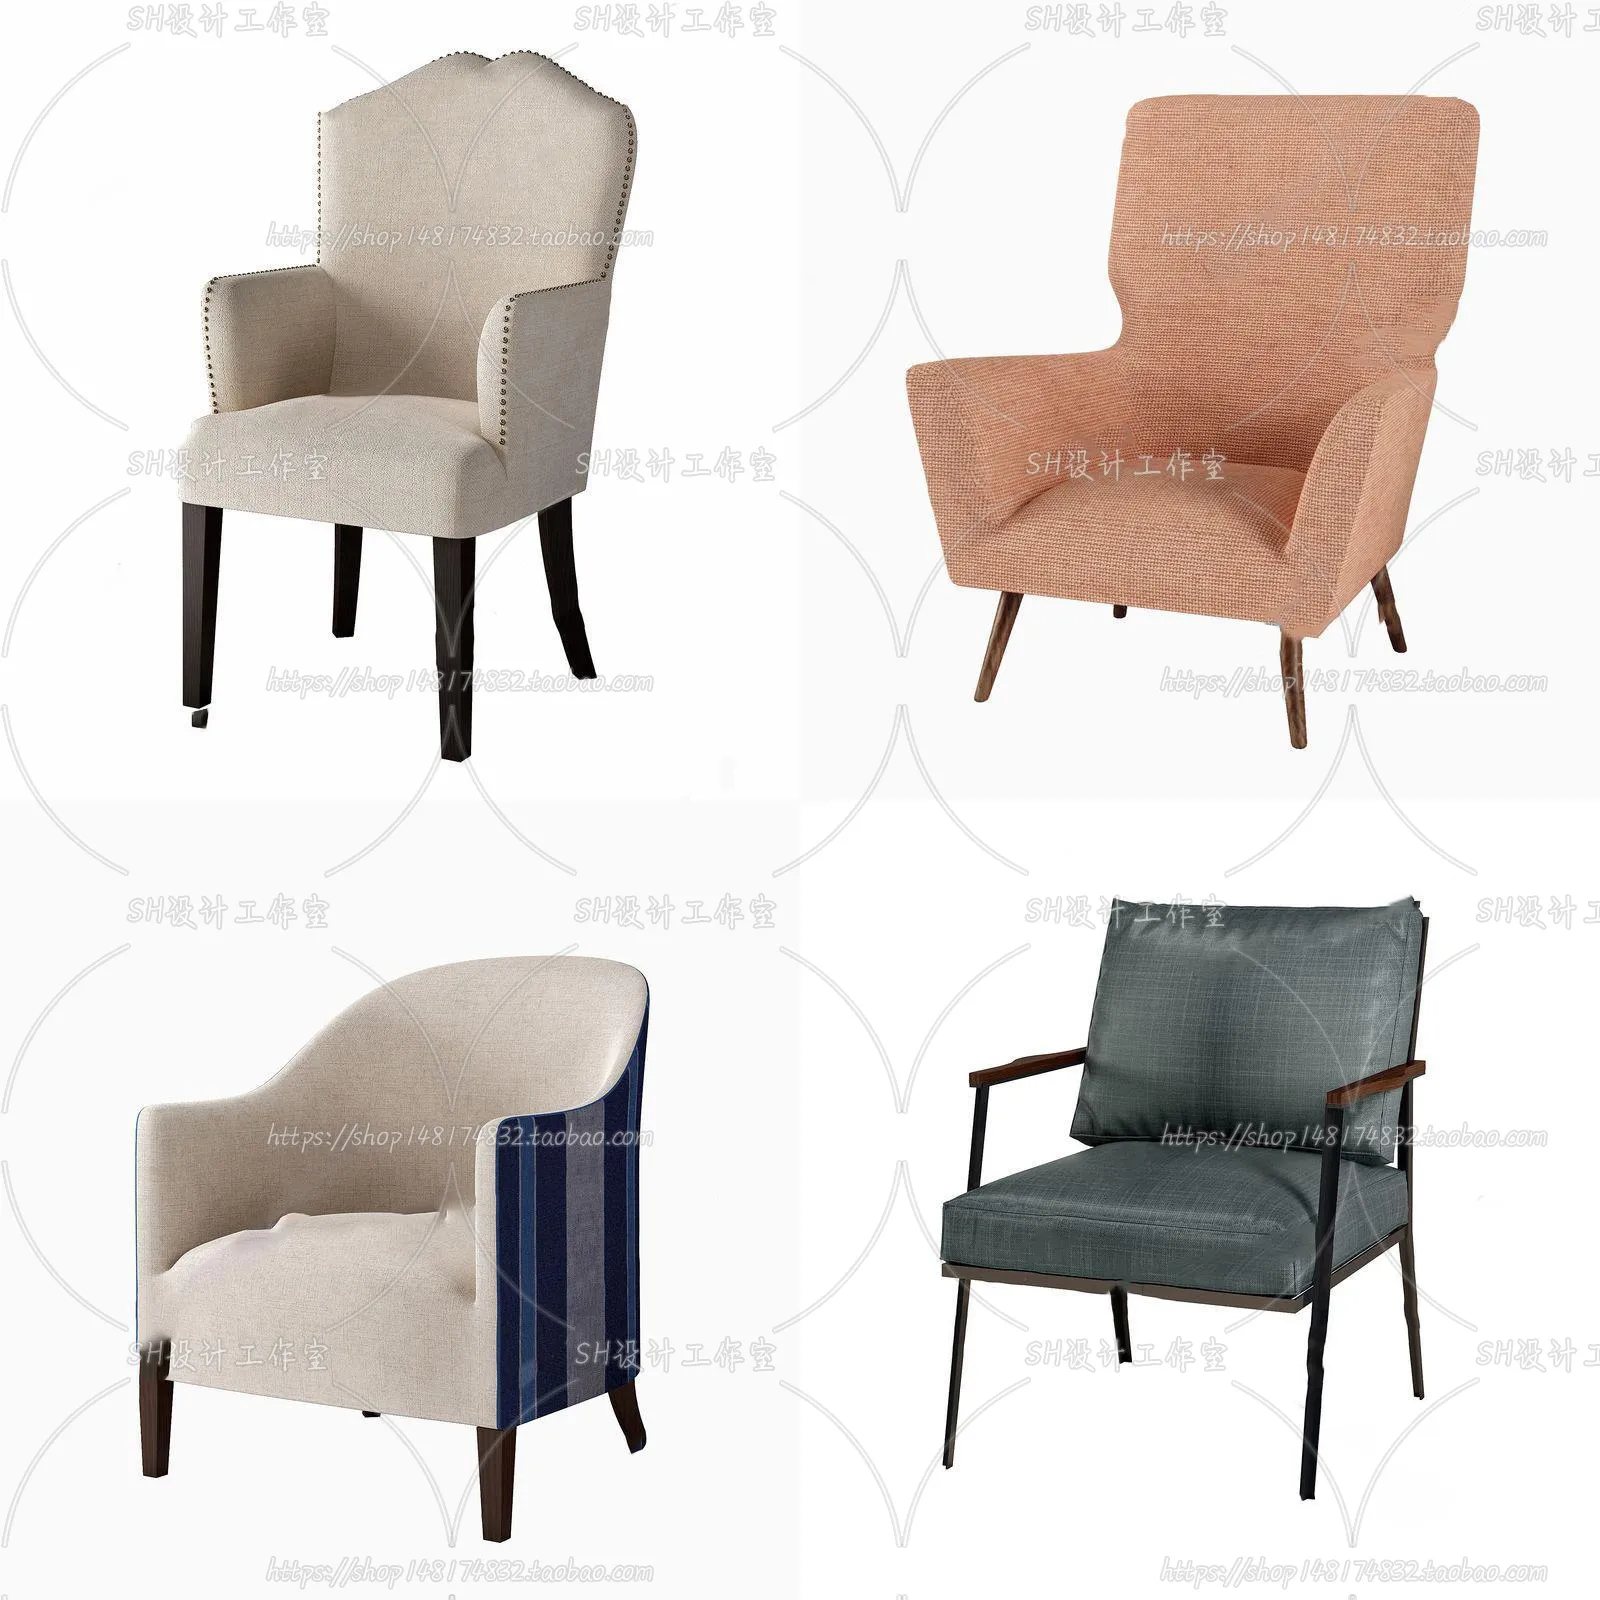 Chair – Single Chair 3D Models – 1997